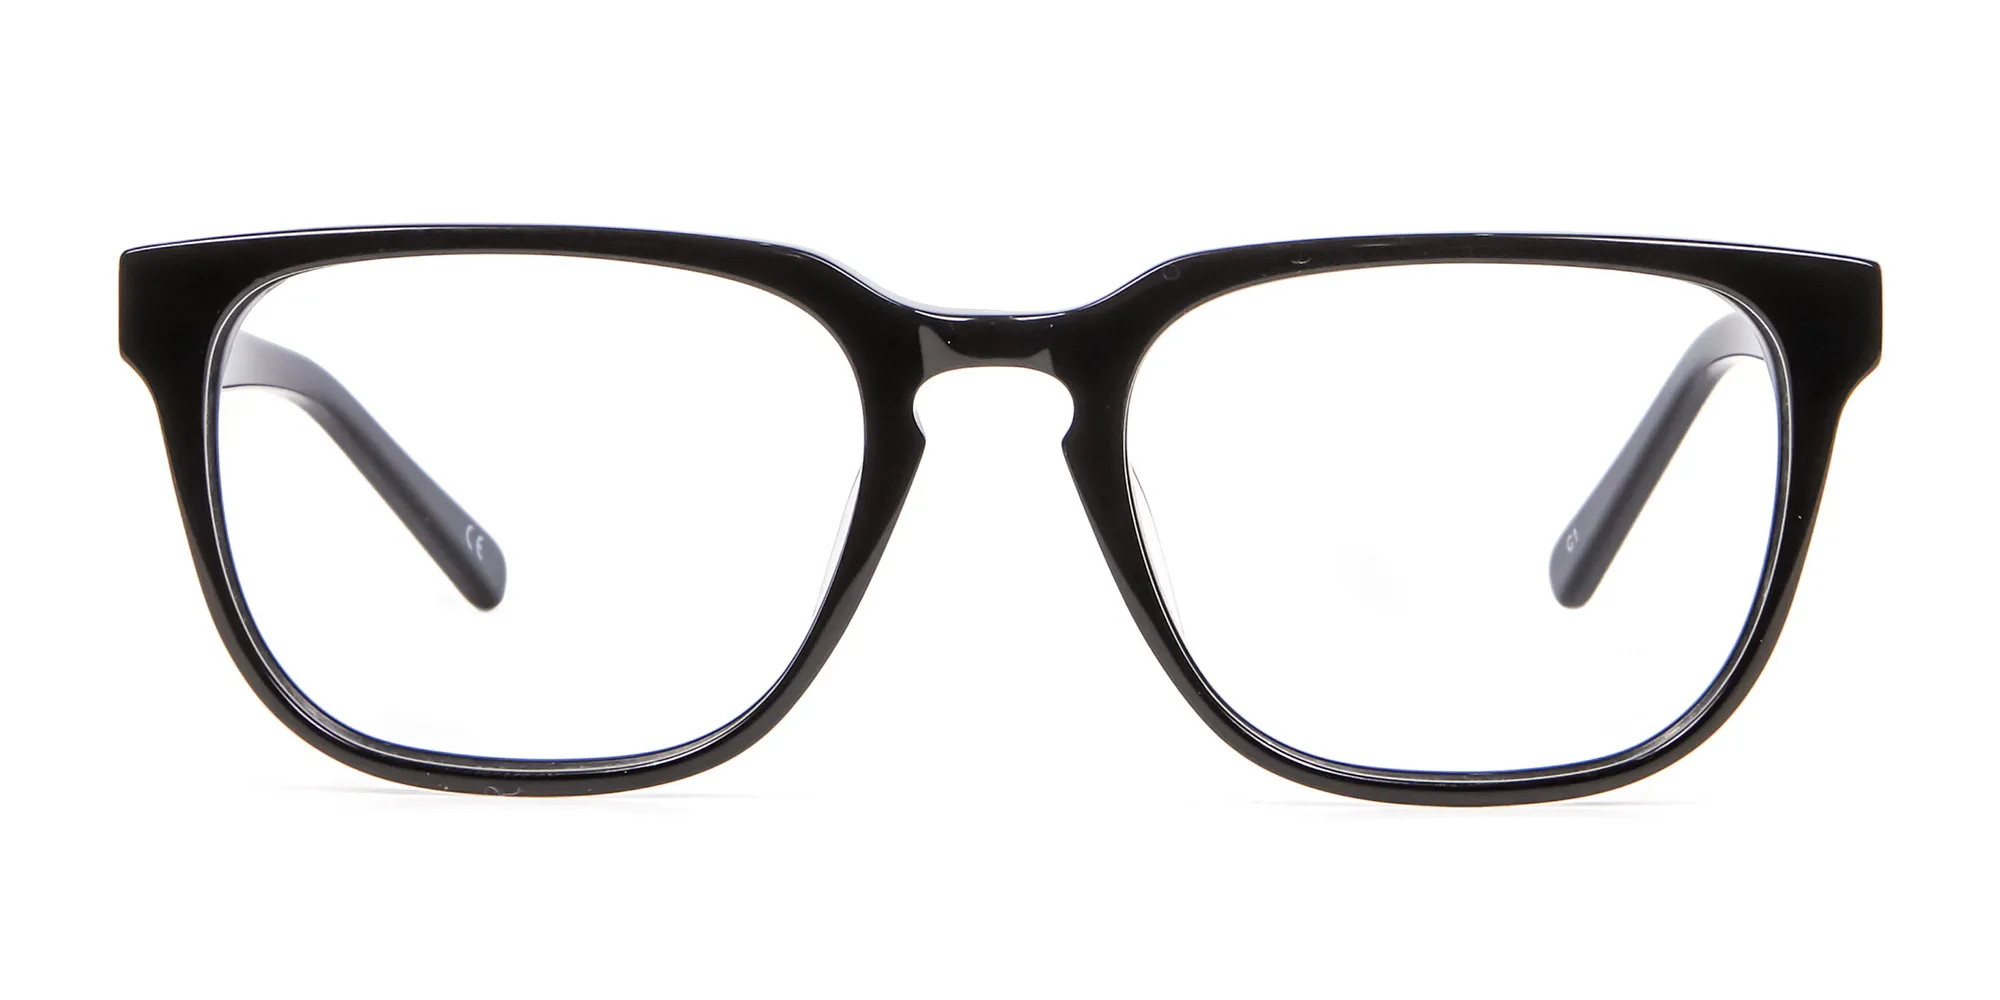 Cosmopolitan Black Glasses - 1